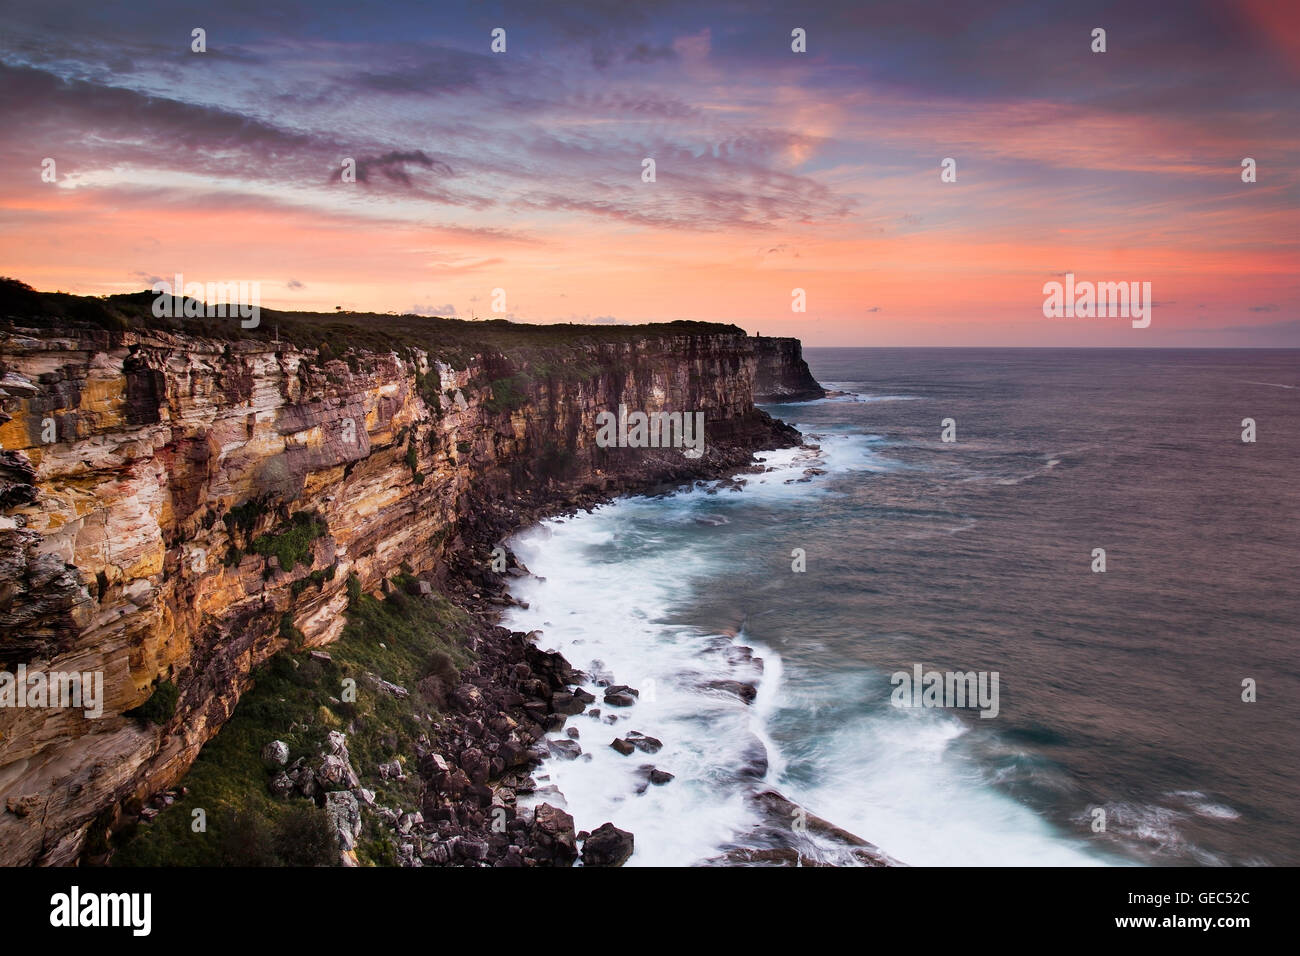 Scharfen felsigen Steilküste von australischen Kontinent Plato mit Blick auf offene Gewässern des Pazifischen Ozeans in Sydney vom North Head Eingang nach Sydney Stockfoto